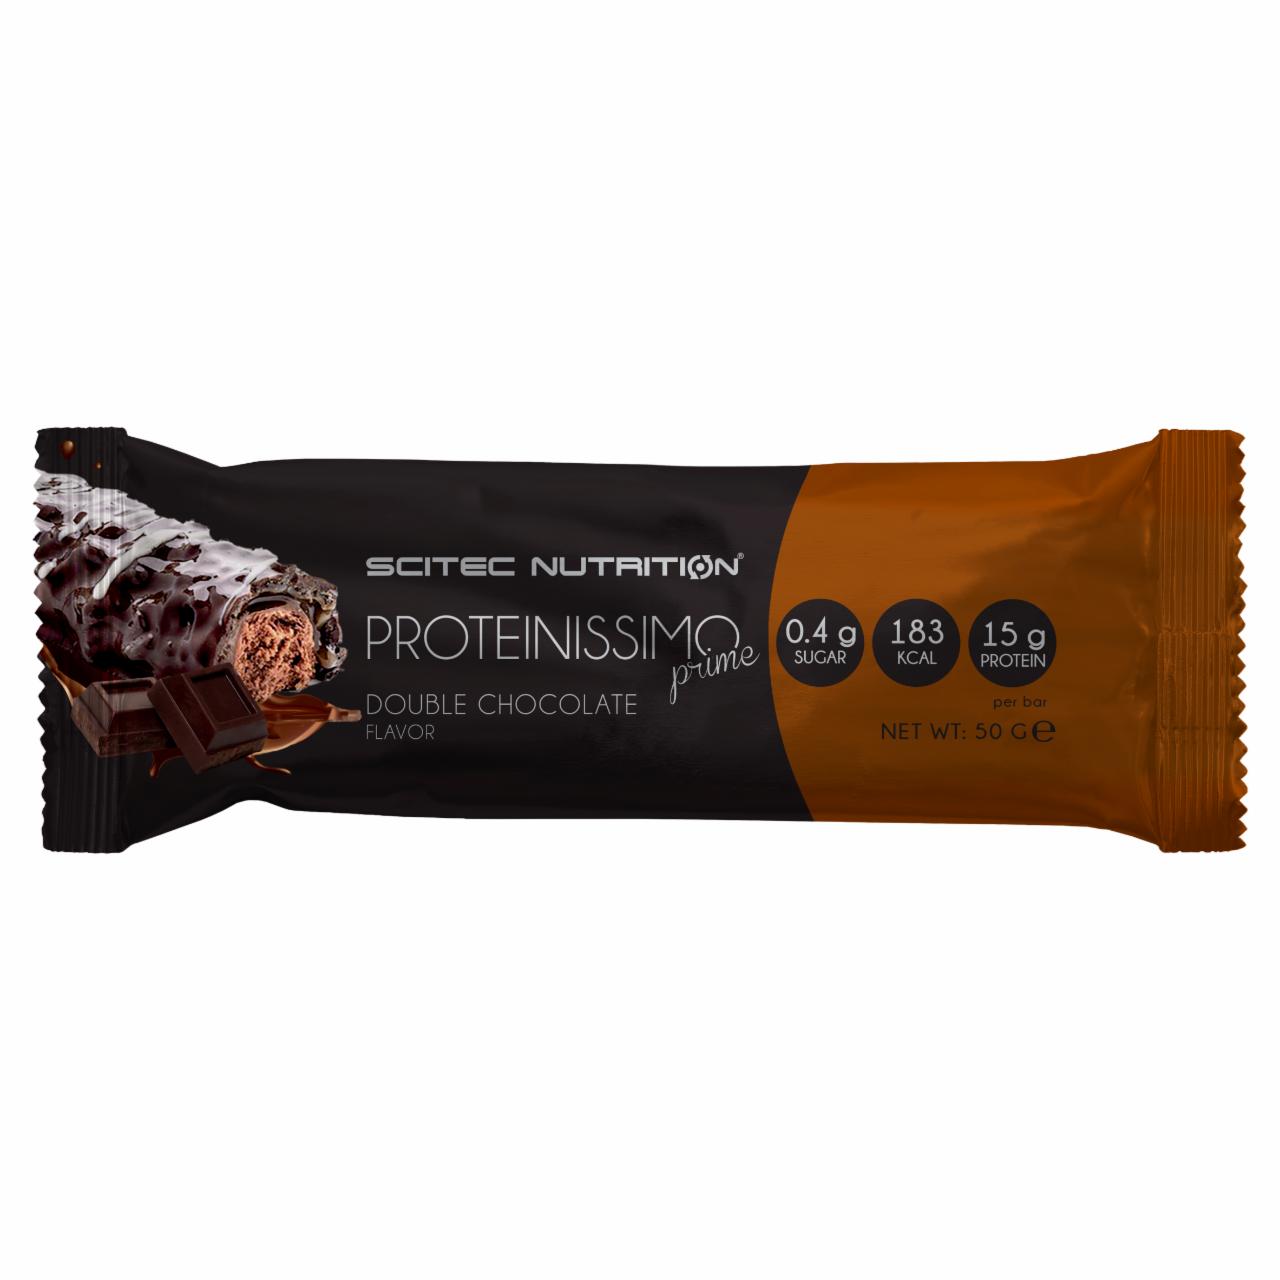 Képek - Proteinissimo Prime csokoládé ízű fehérjeszelet, étcsokoládé bevonattal Scitec Nutrition